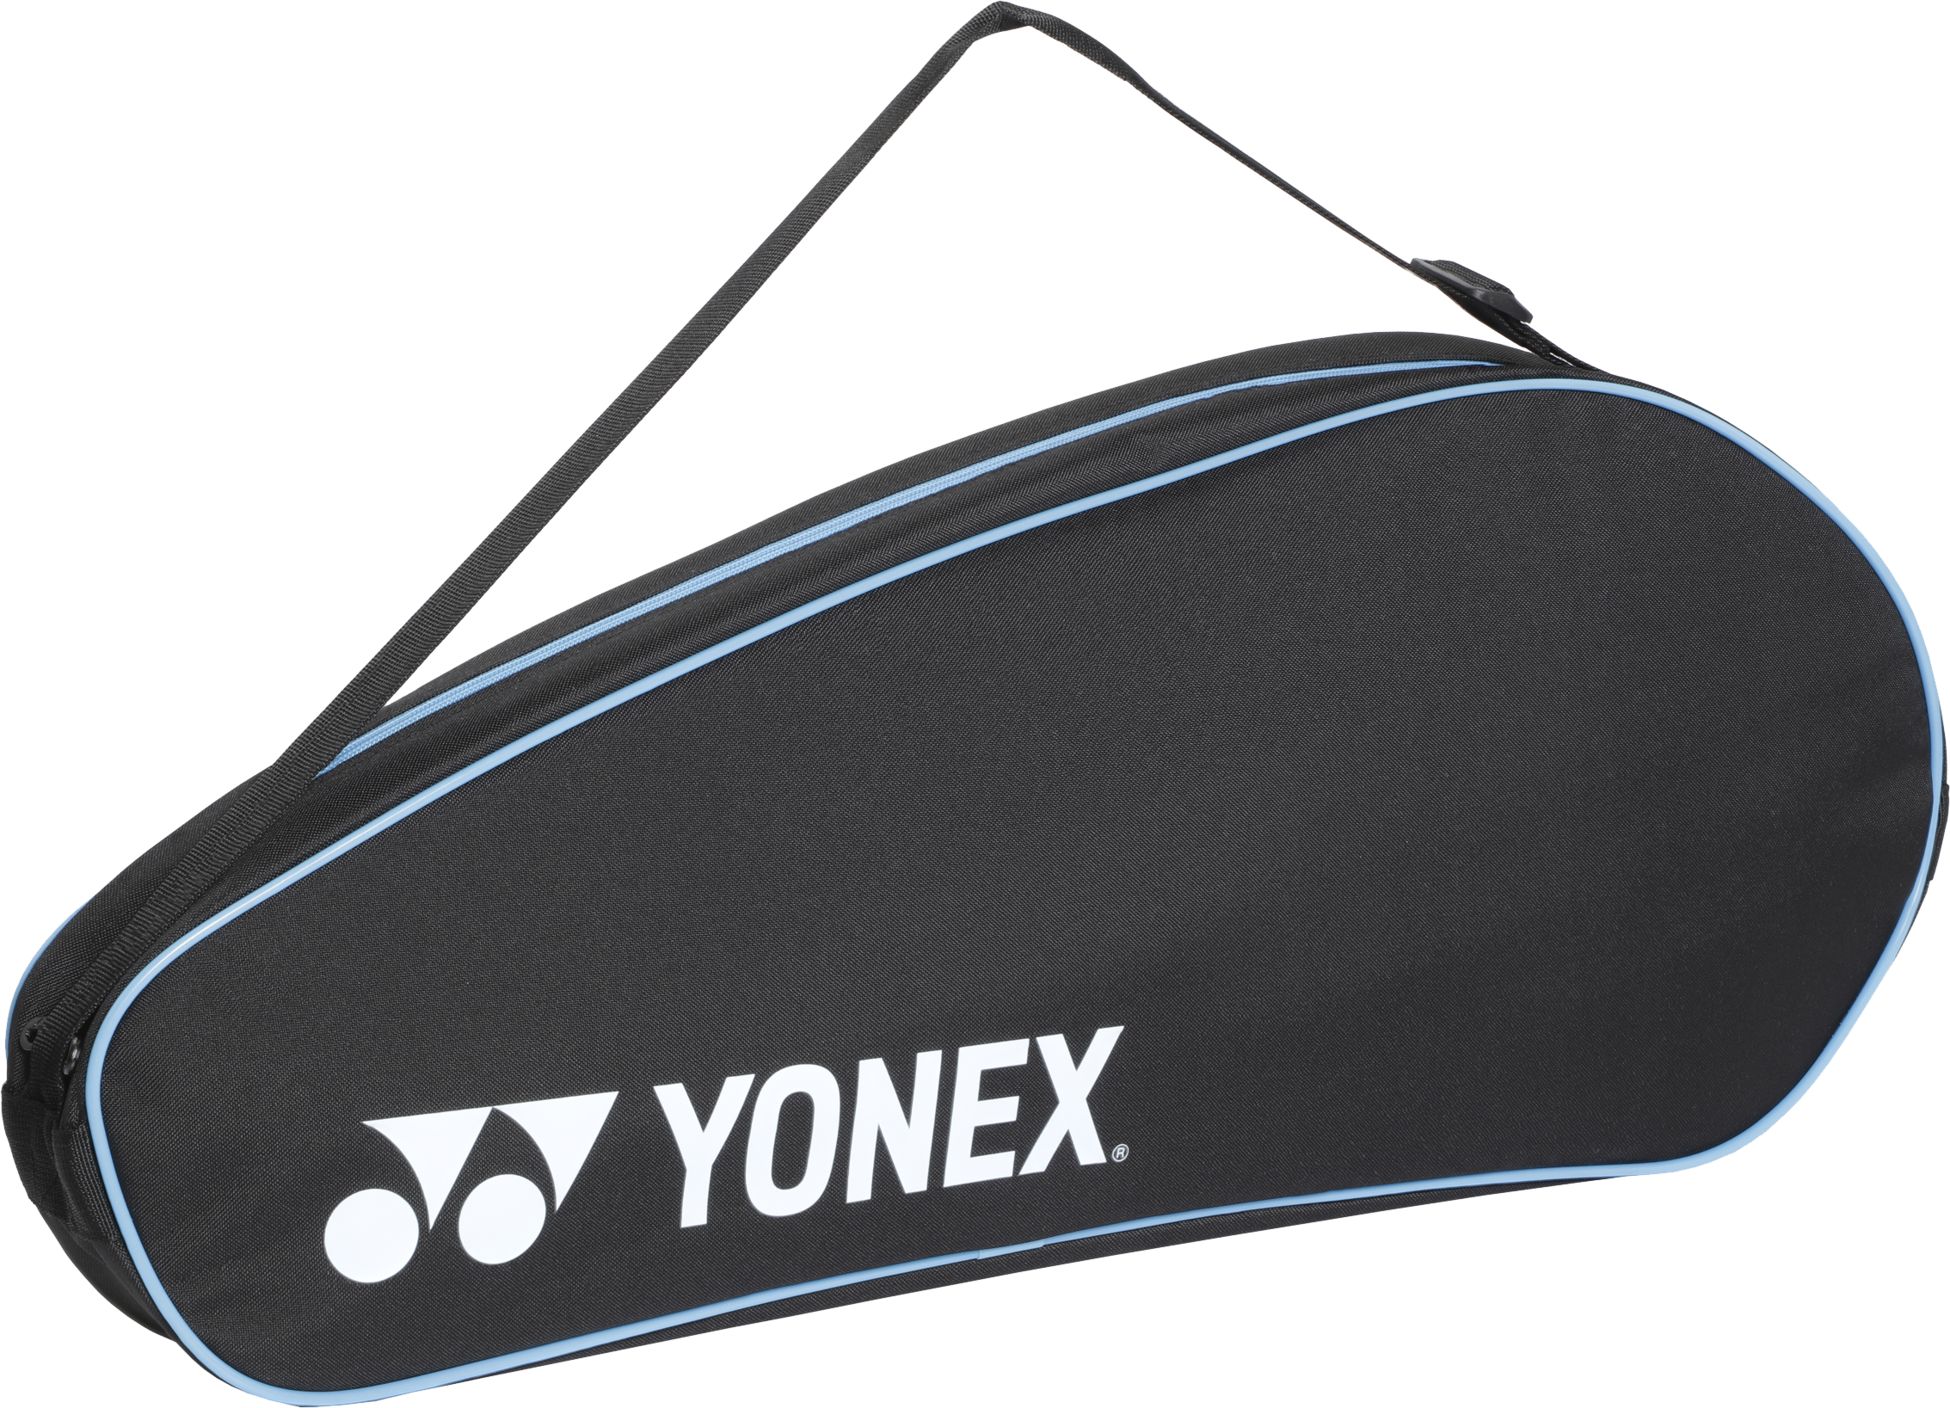 YONEX, RACKETBAG 3 PCS